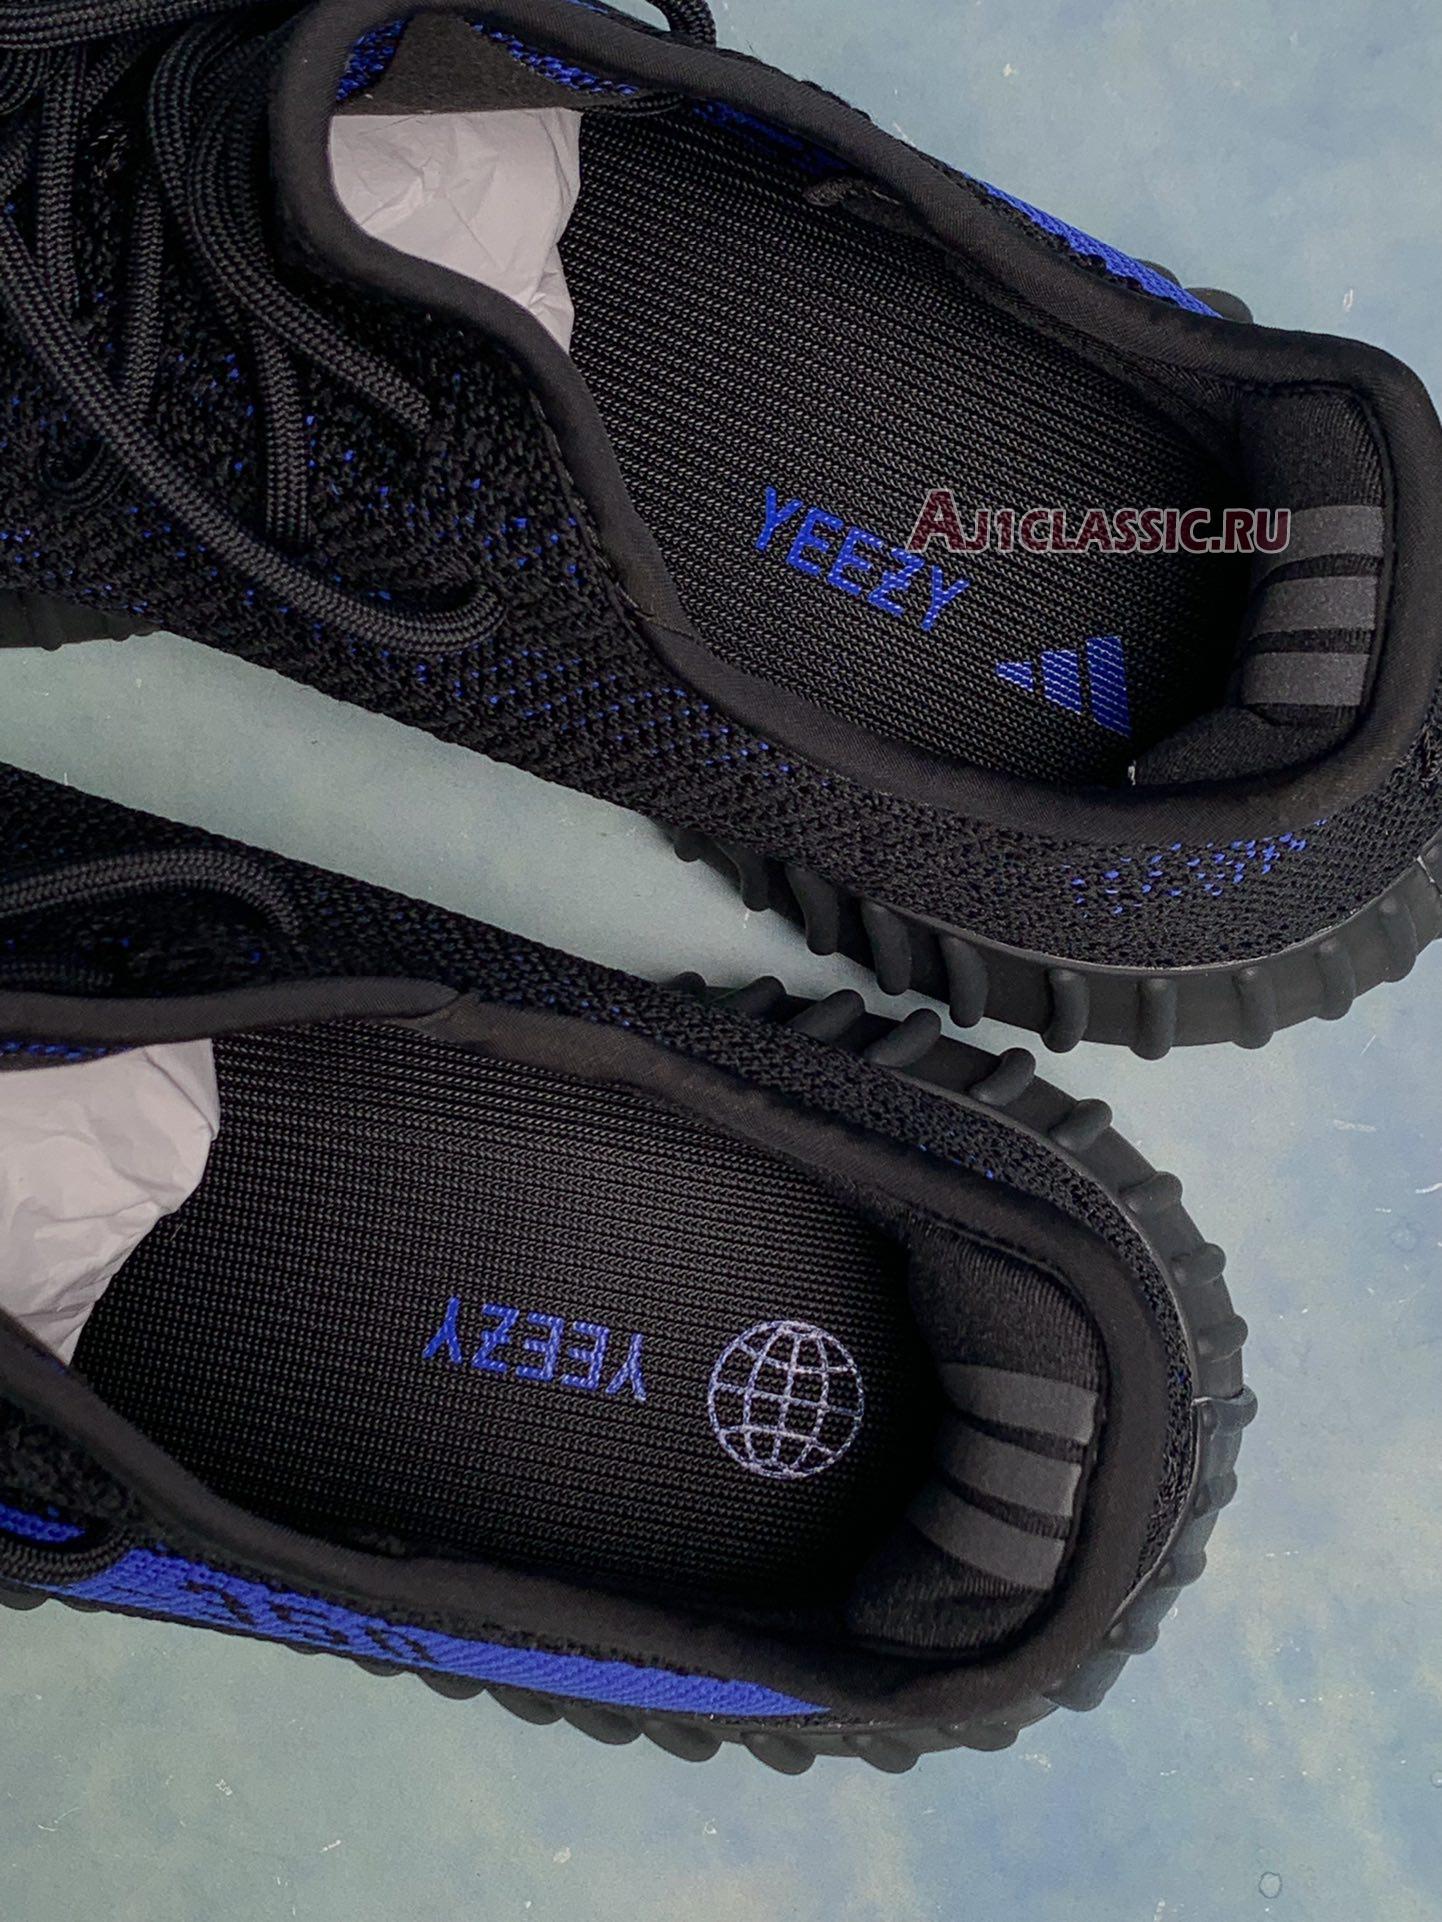 Adidas Yeezy Boost 350 V2 "Dazzling Blue" GY7164-2